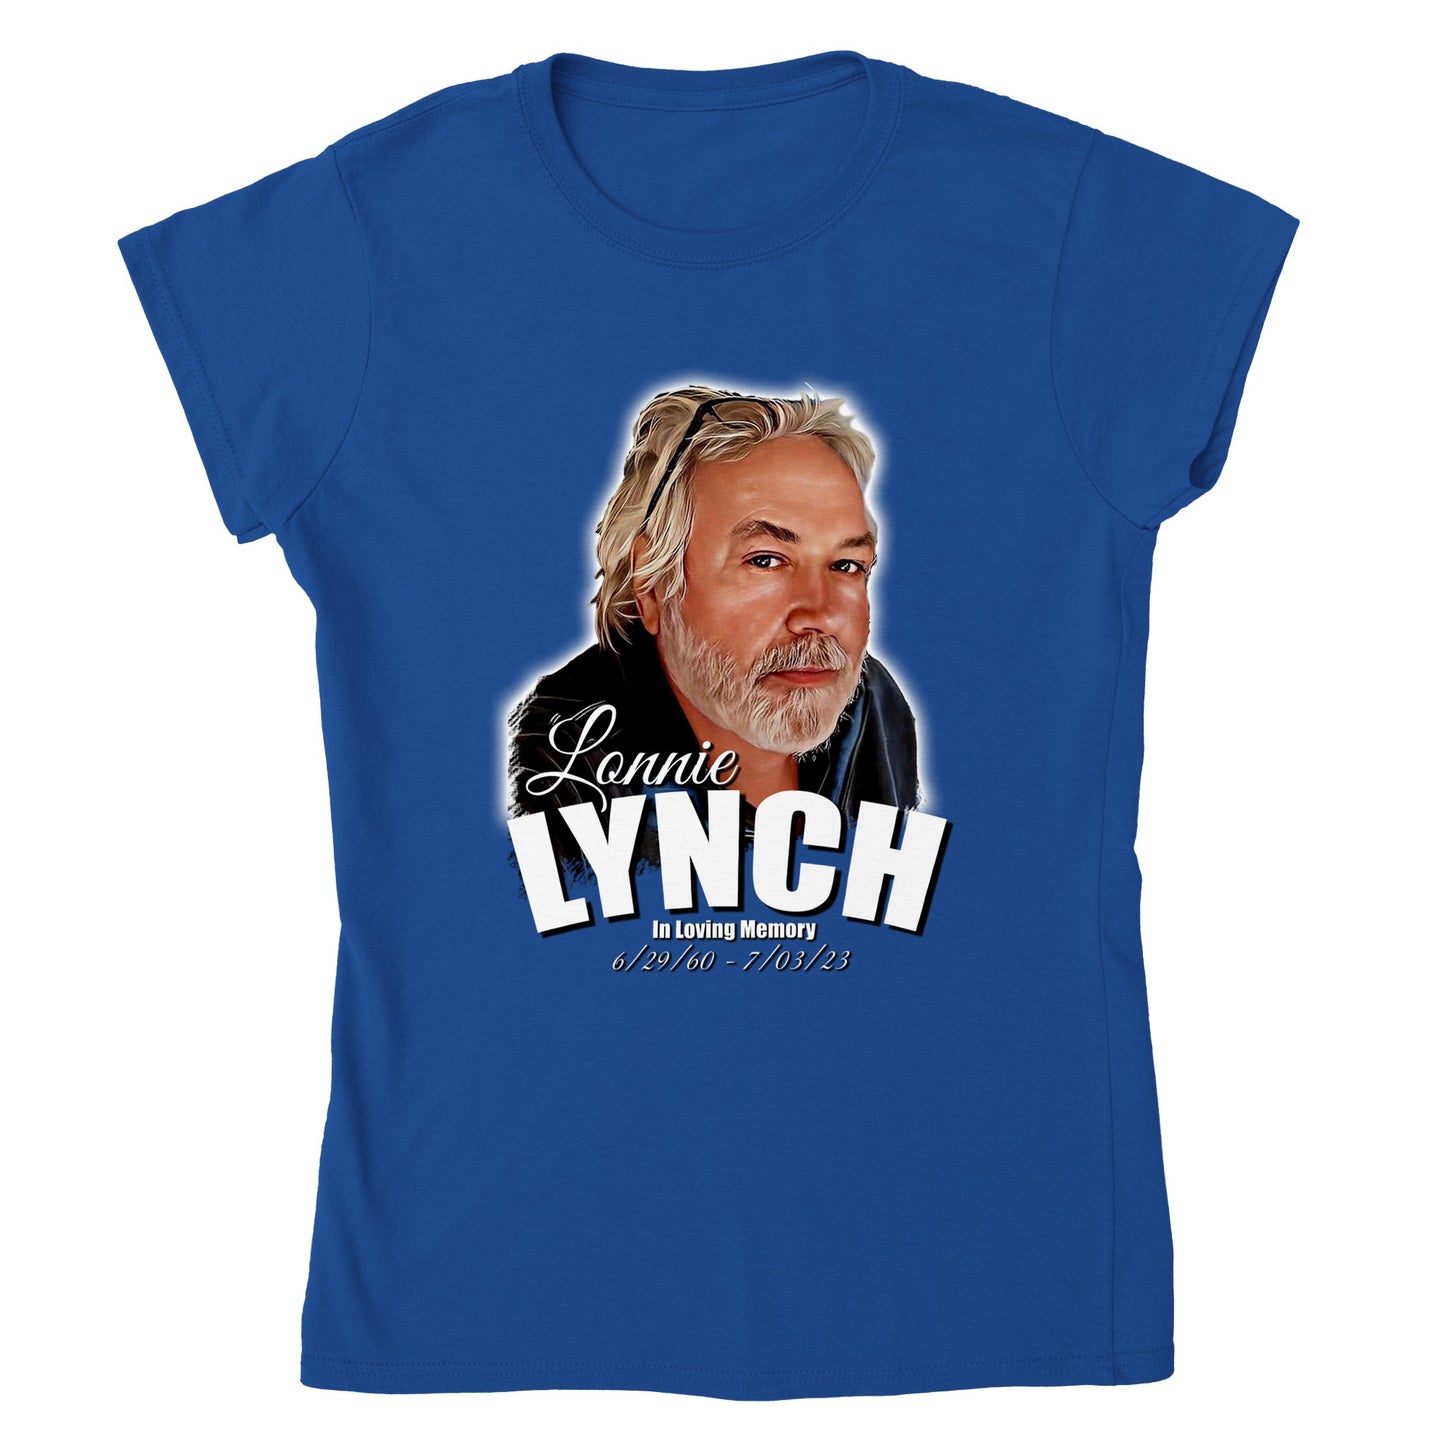 Lonnie Lynch Classic Womens Crewneck T-shirt